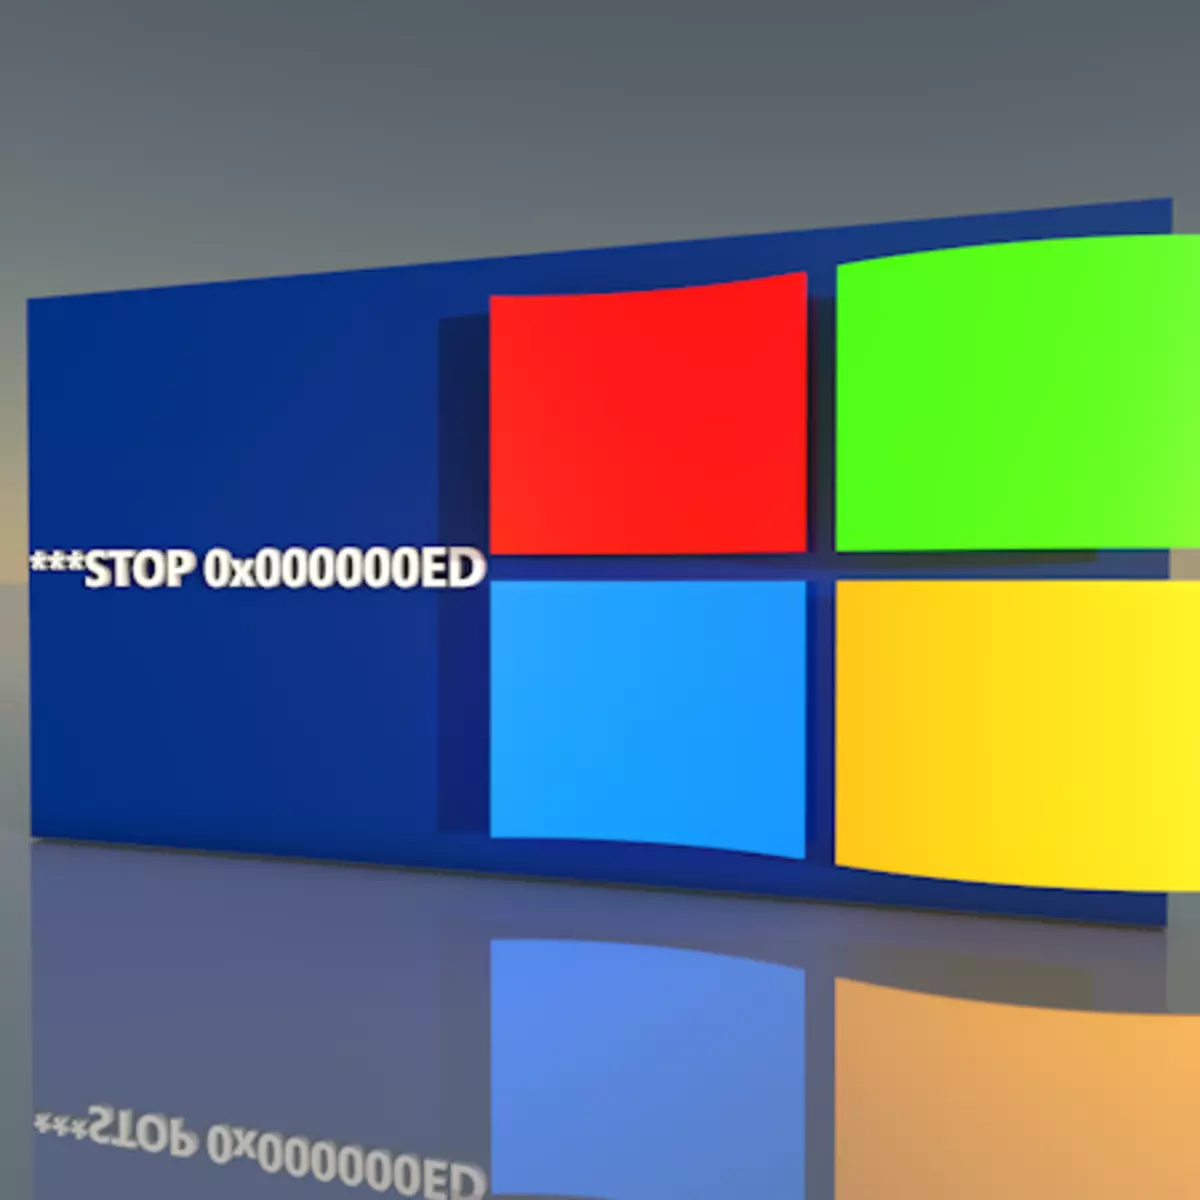 Kif tikkoreġi l-iżball "Stop 0x0000Eed" meta booting Windows XP